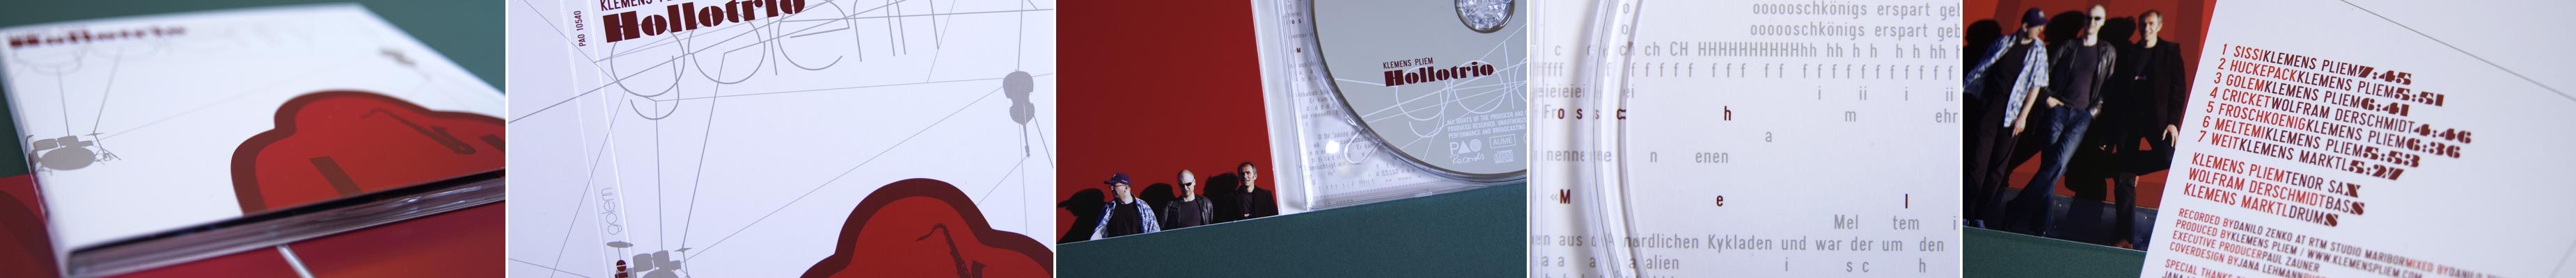 CD Gestaltung für Hollotrio